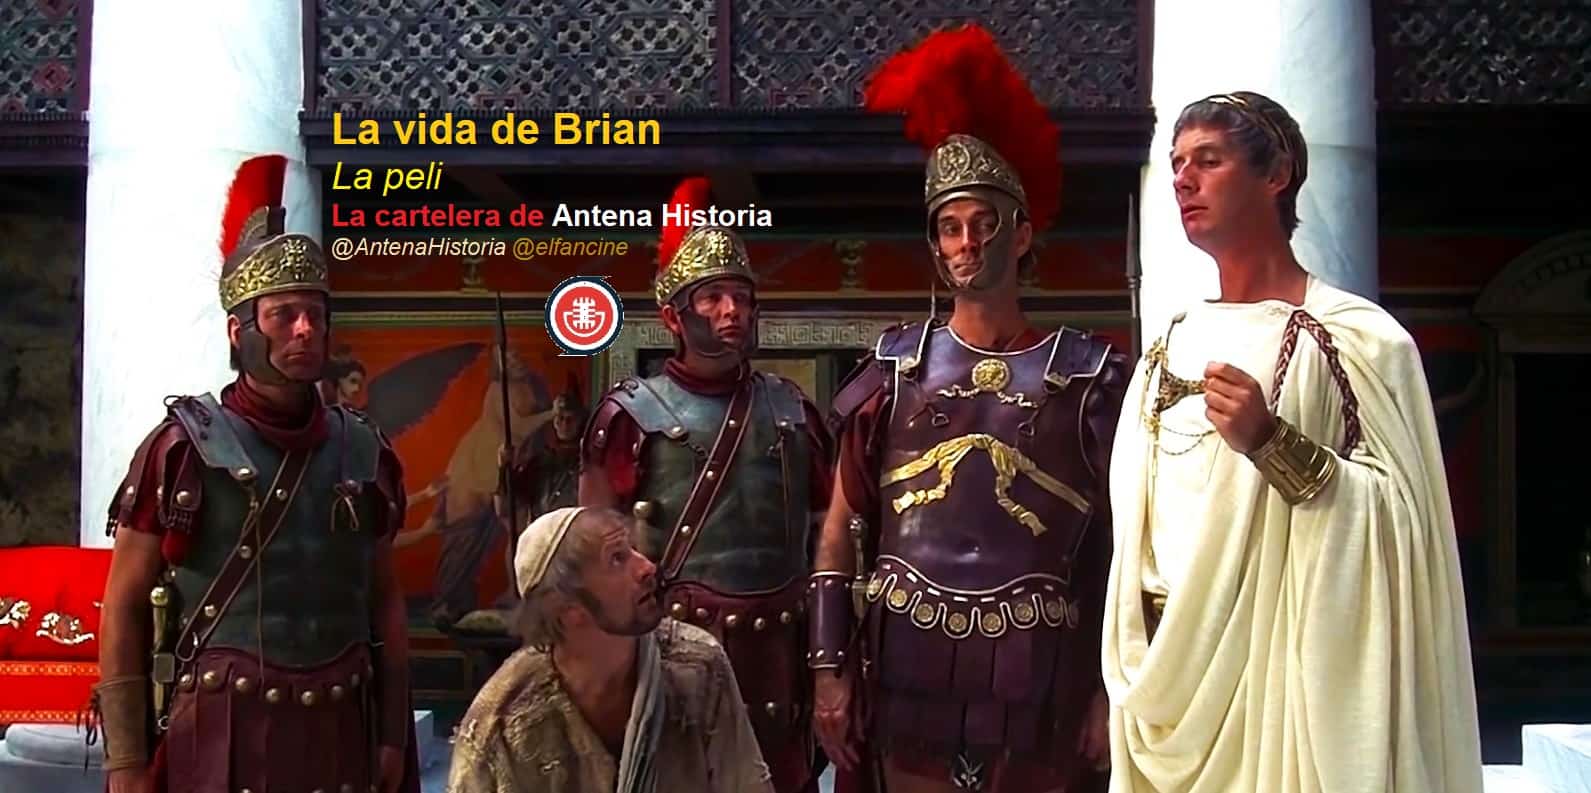 La vida de Brian - Roma y Judea - Monty Python - Humor e inteligencia - Censura Woke - Antena Historia - Podcast de cine - el fancine